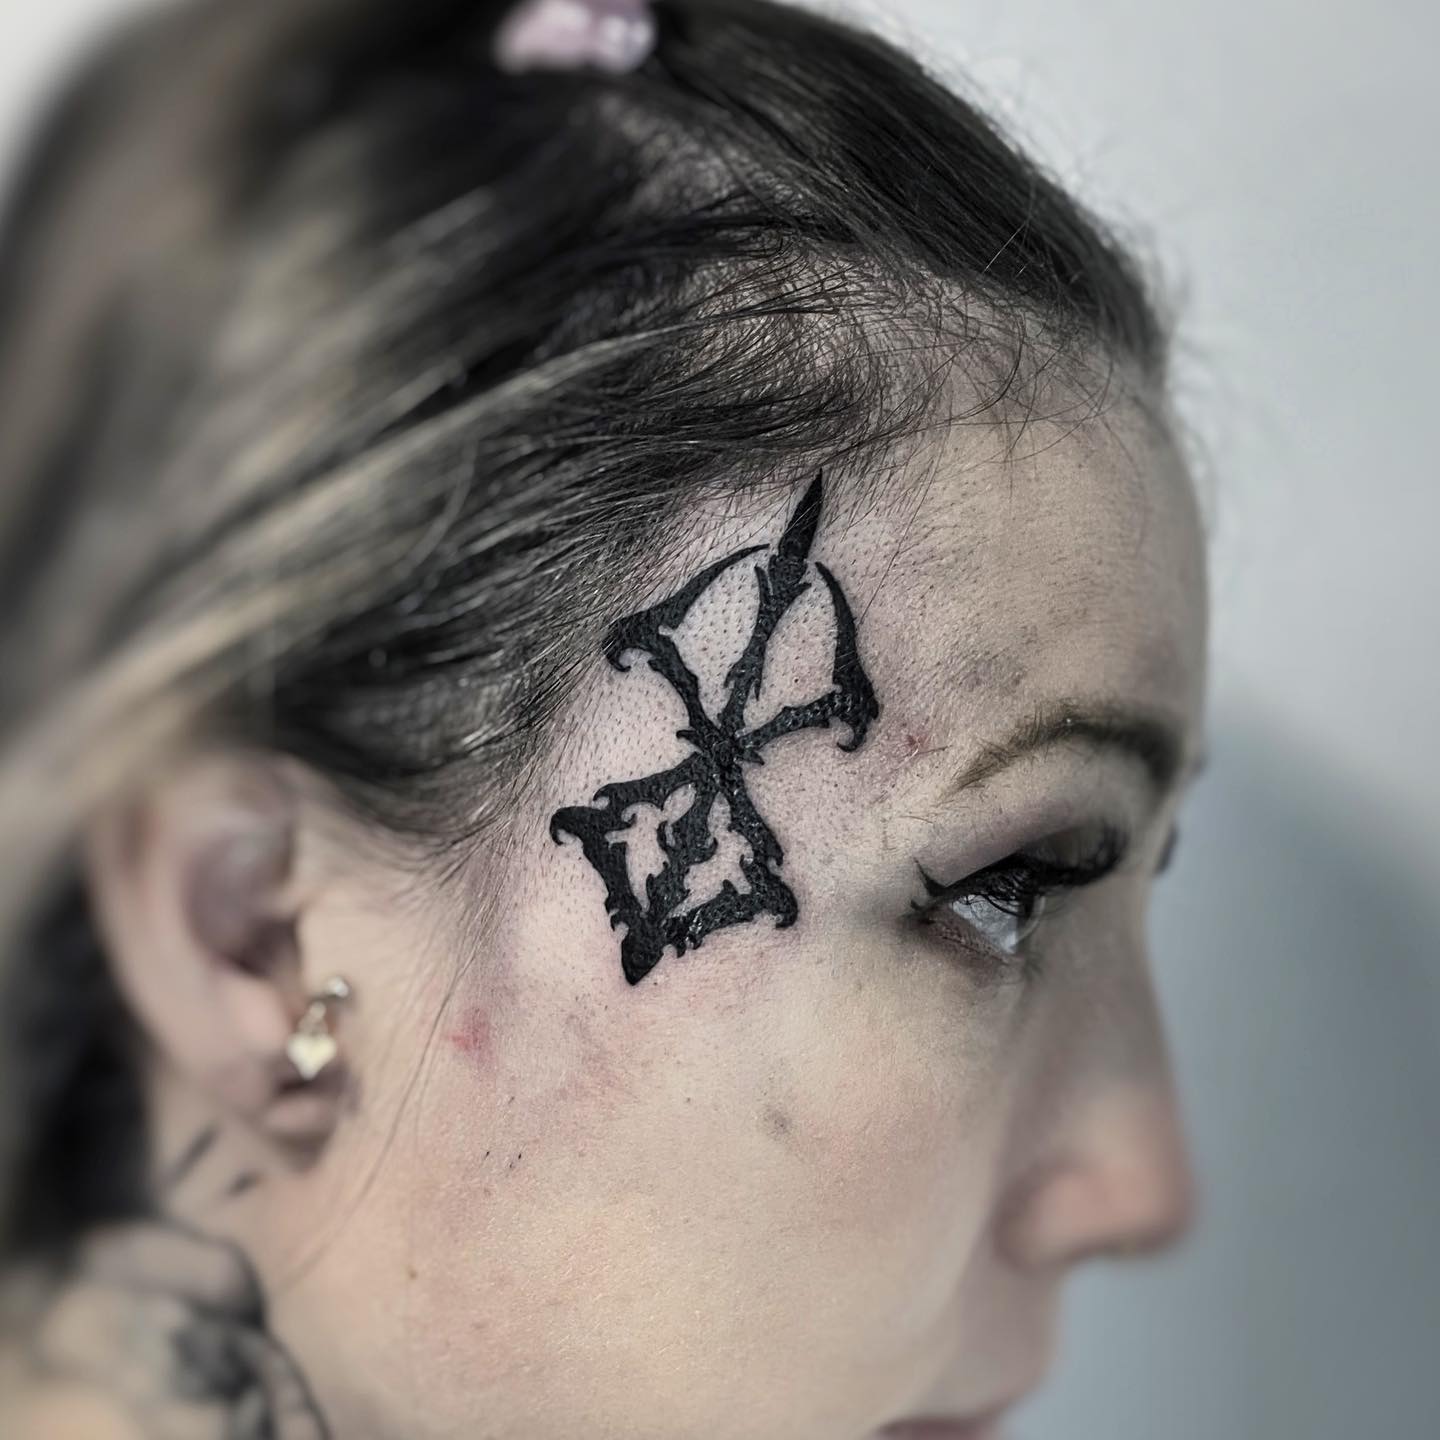 Símbolo de Berserk en una tatuaje en la cara